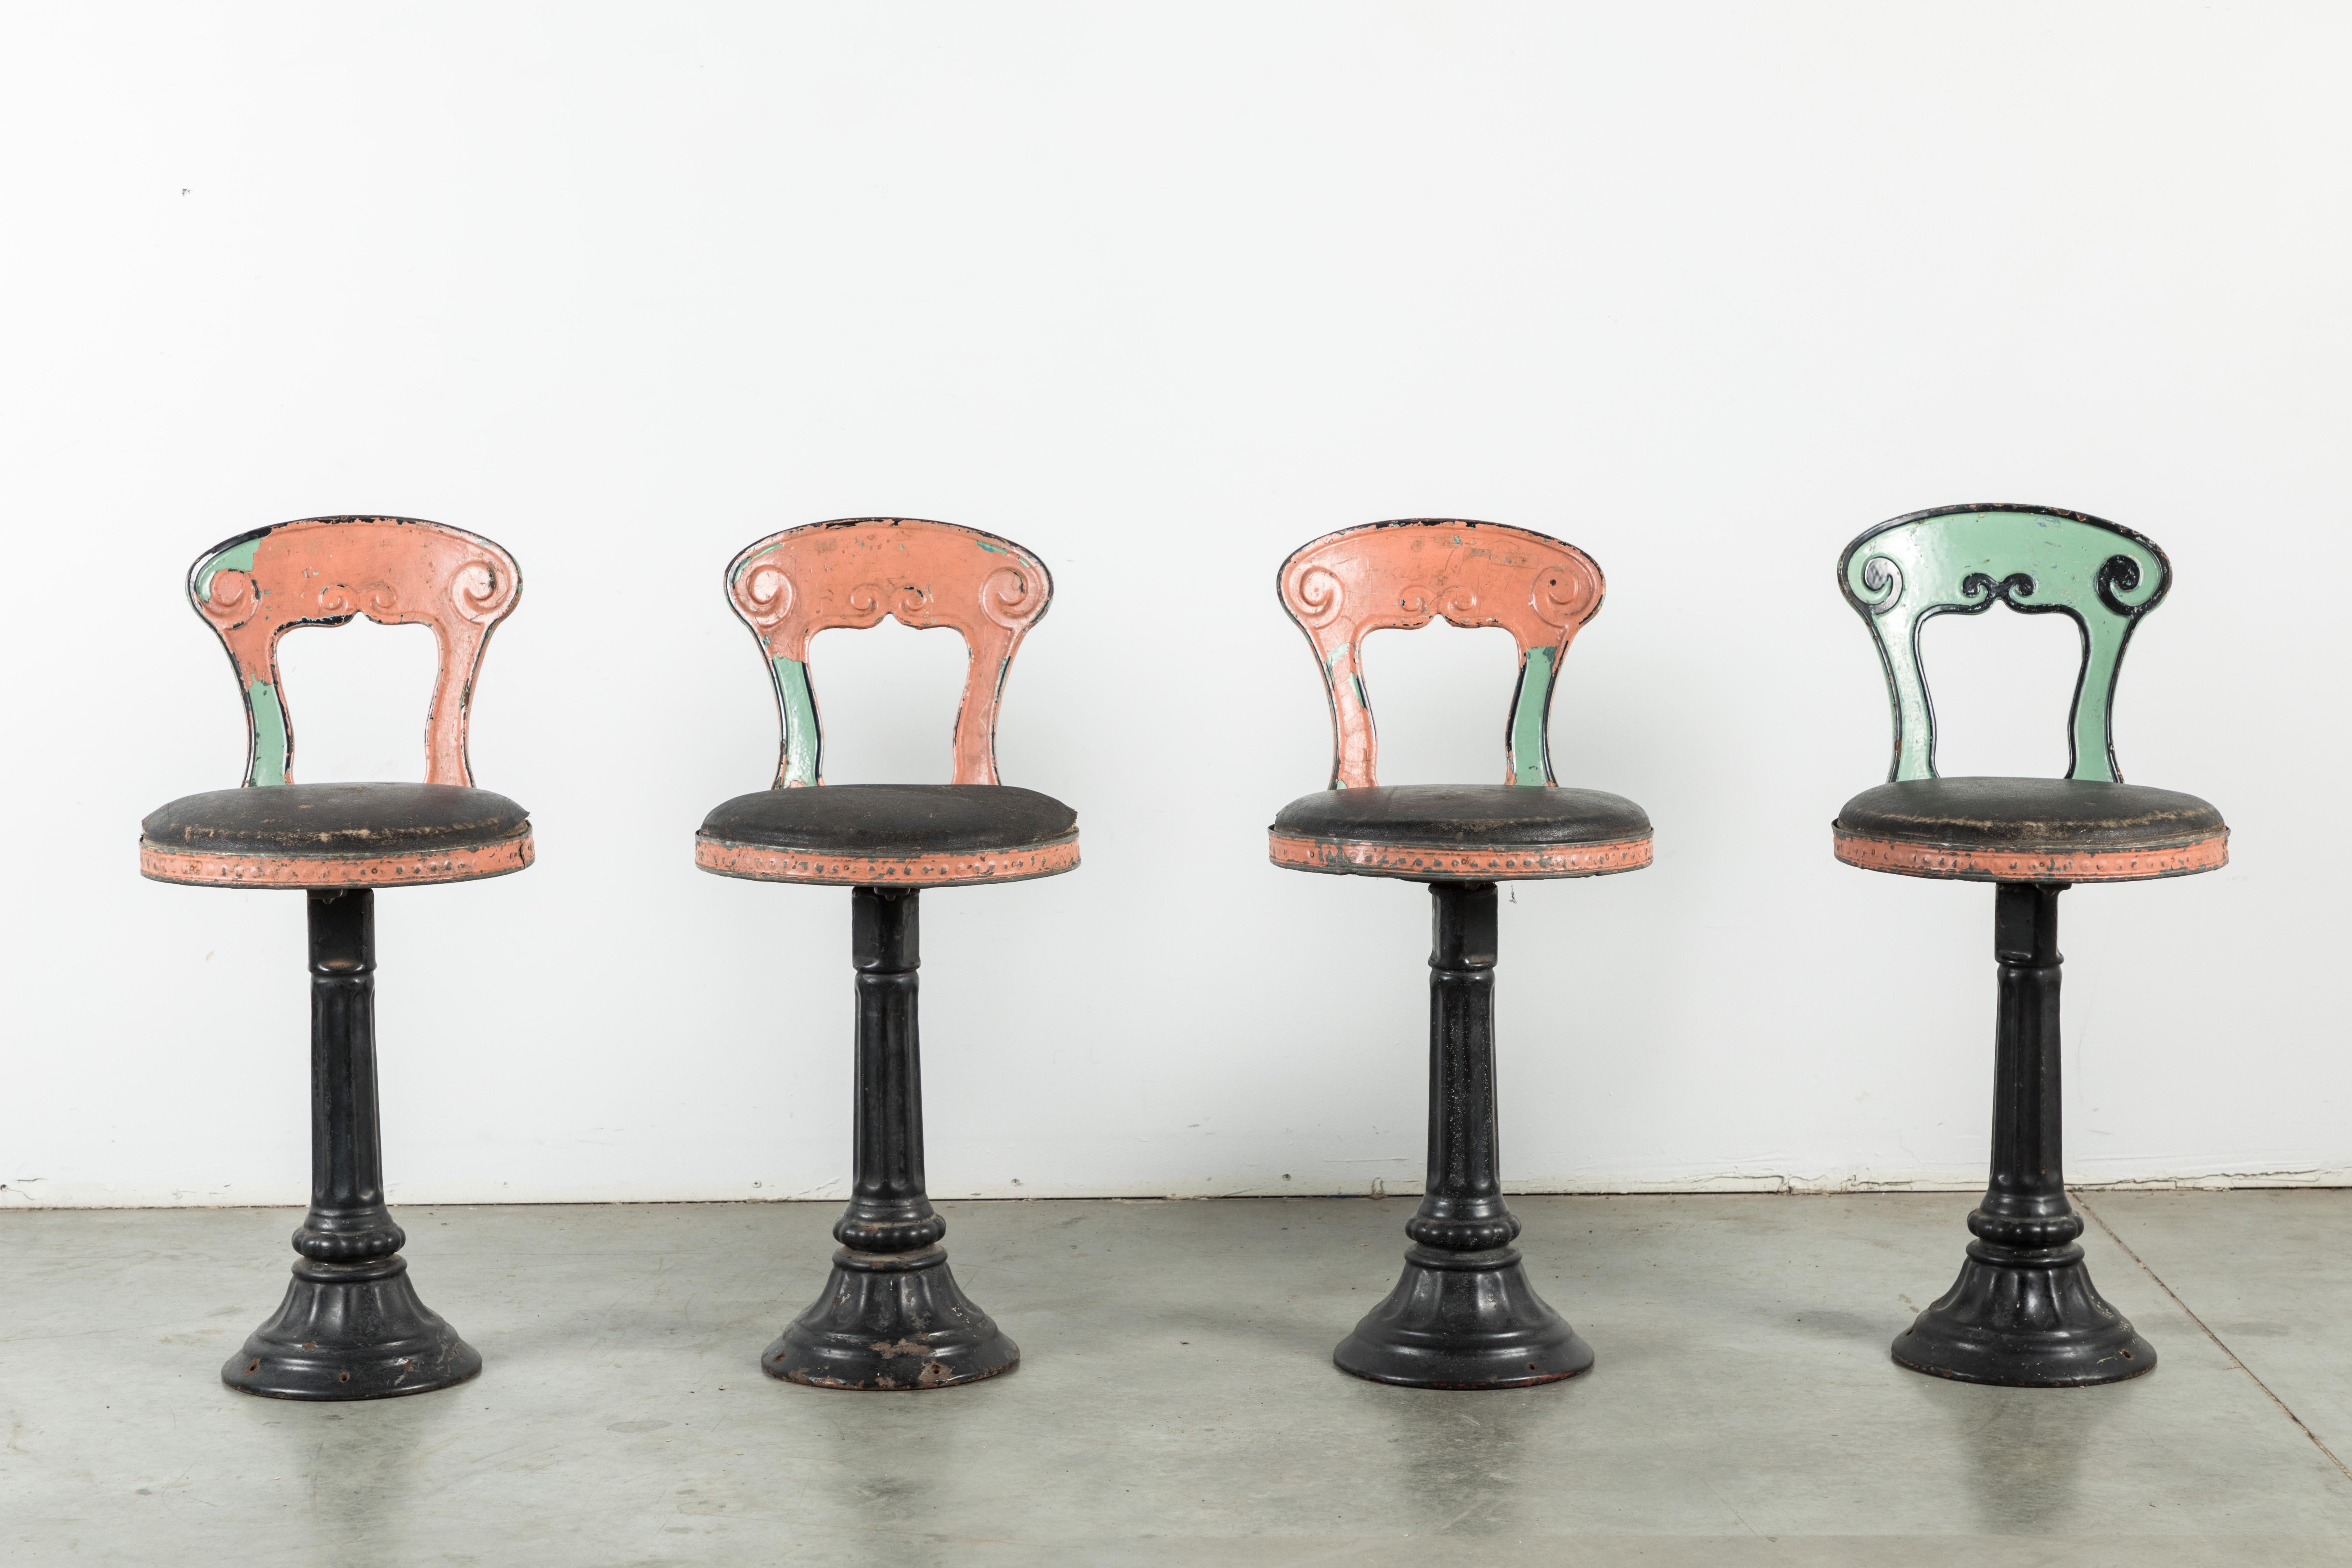 Toller Satz von vier gusseisernen Soda-Brunnen-Stühlen. Im Nordosten zu finden. Originale mehrschichtige rosa und grüne Lackoberfläche. Auch Original-Lederstuhl-Oberfläche. Sehr schöne Sockel aus Gusseisen.